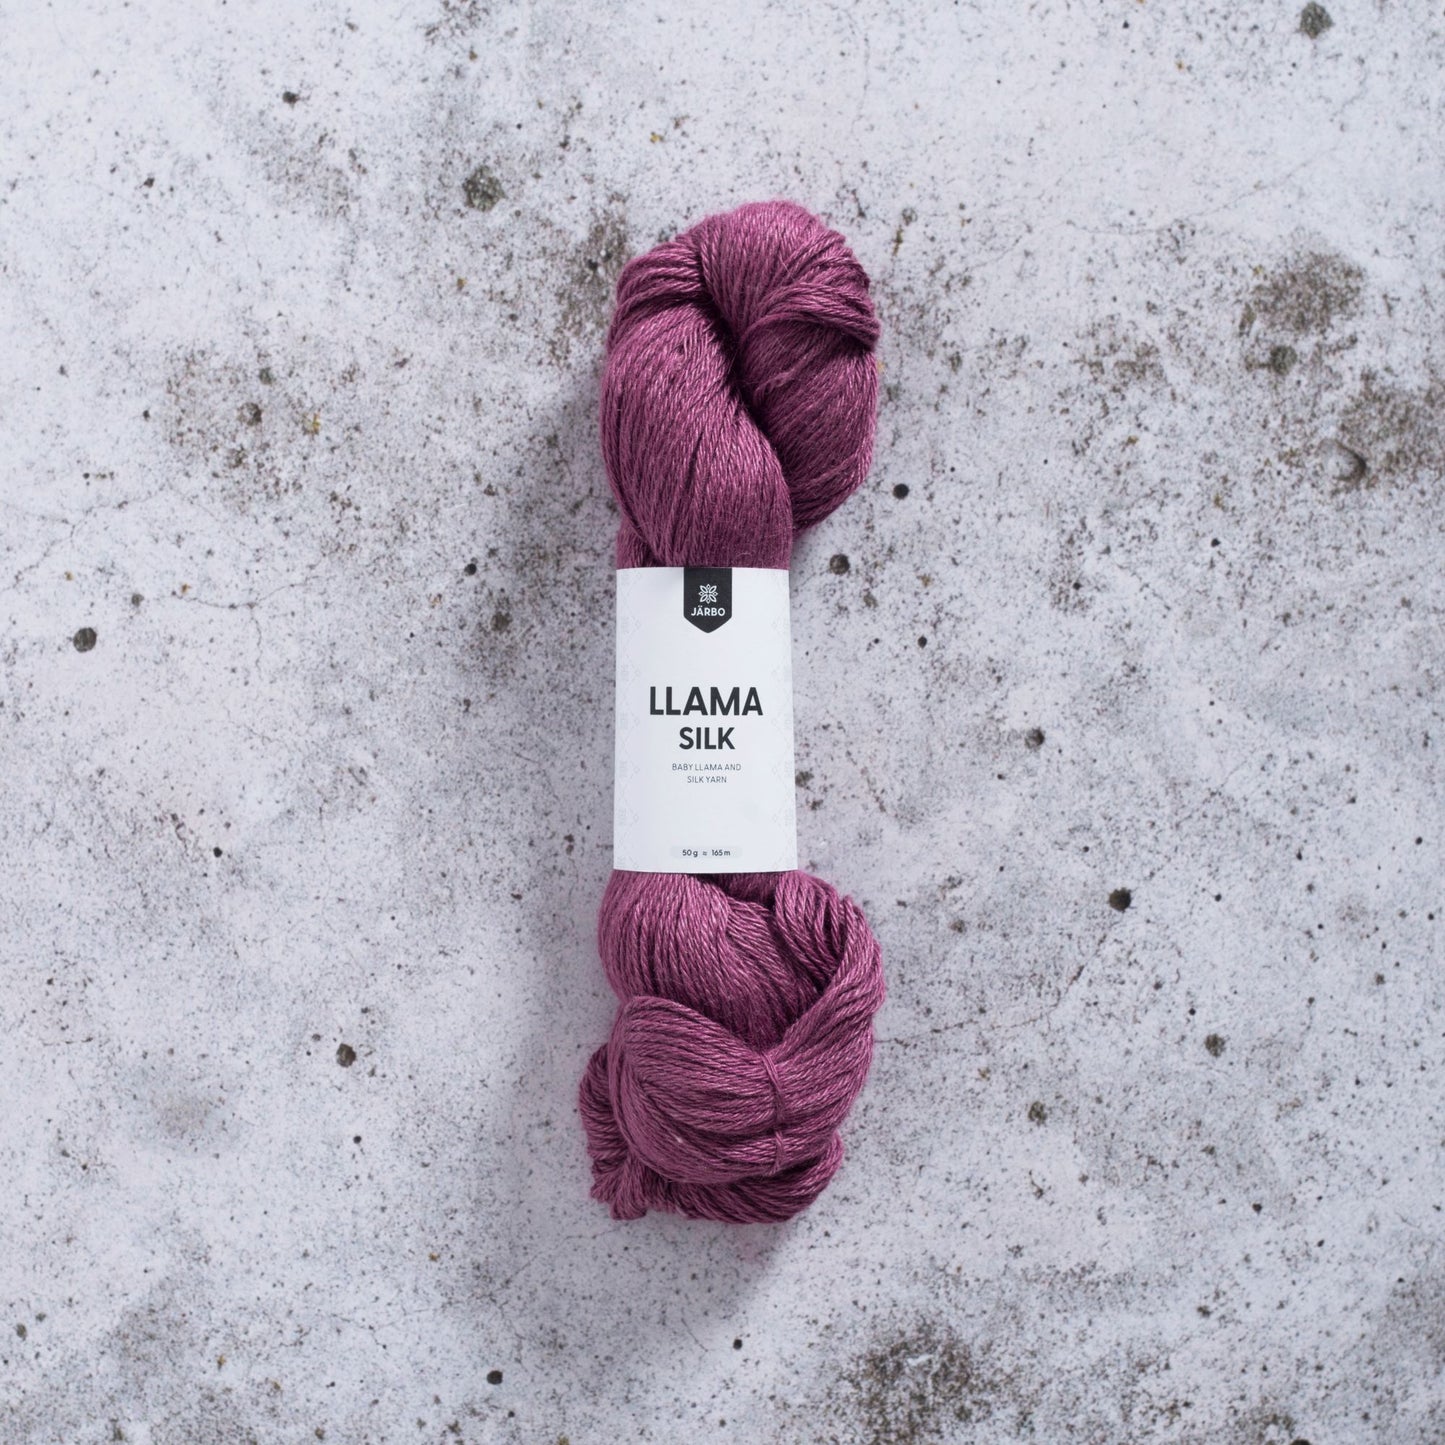 Llama silk | Järbo